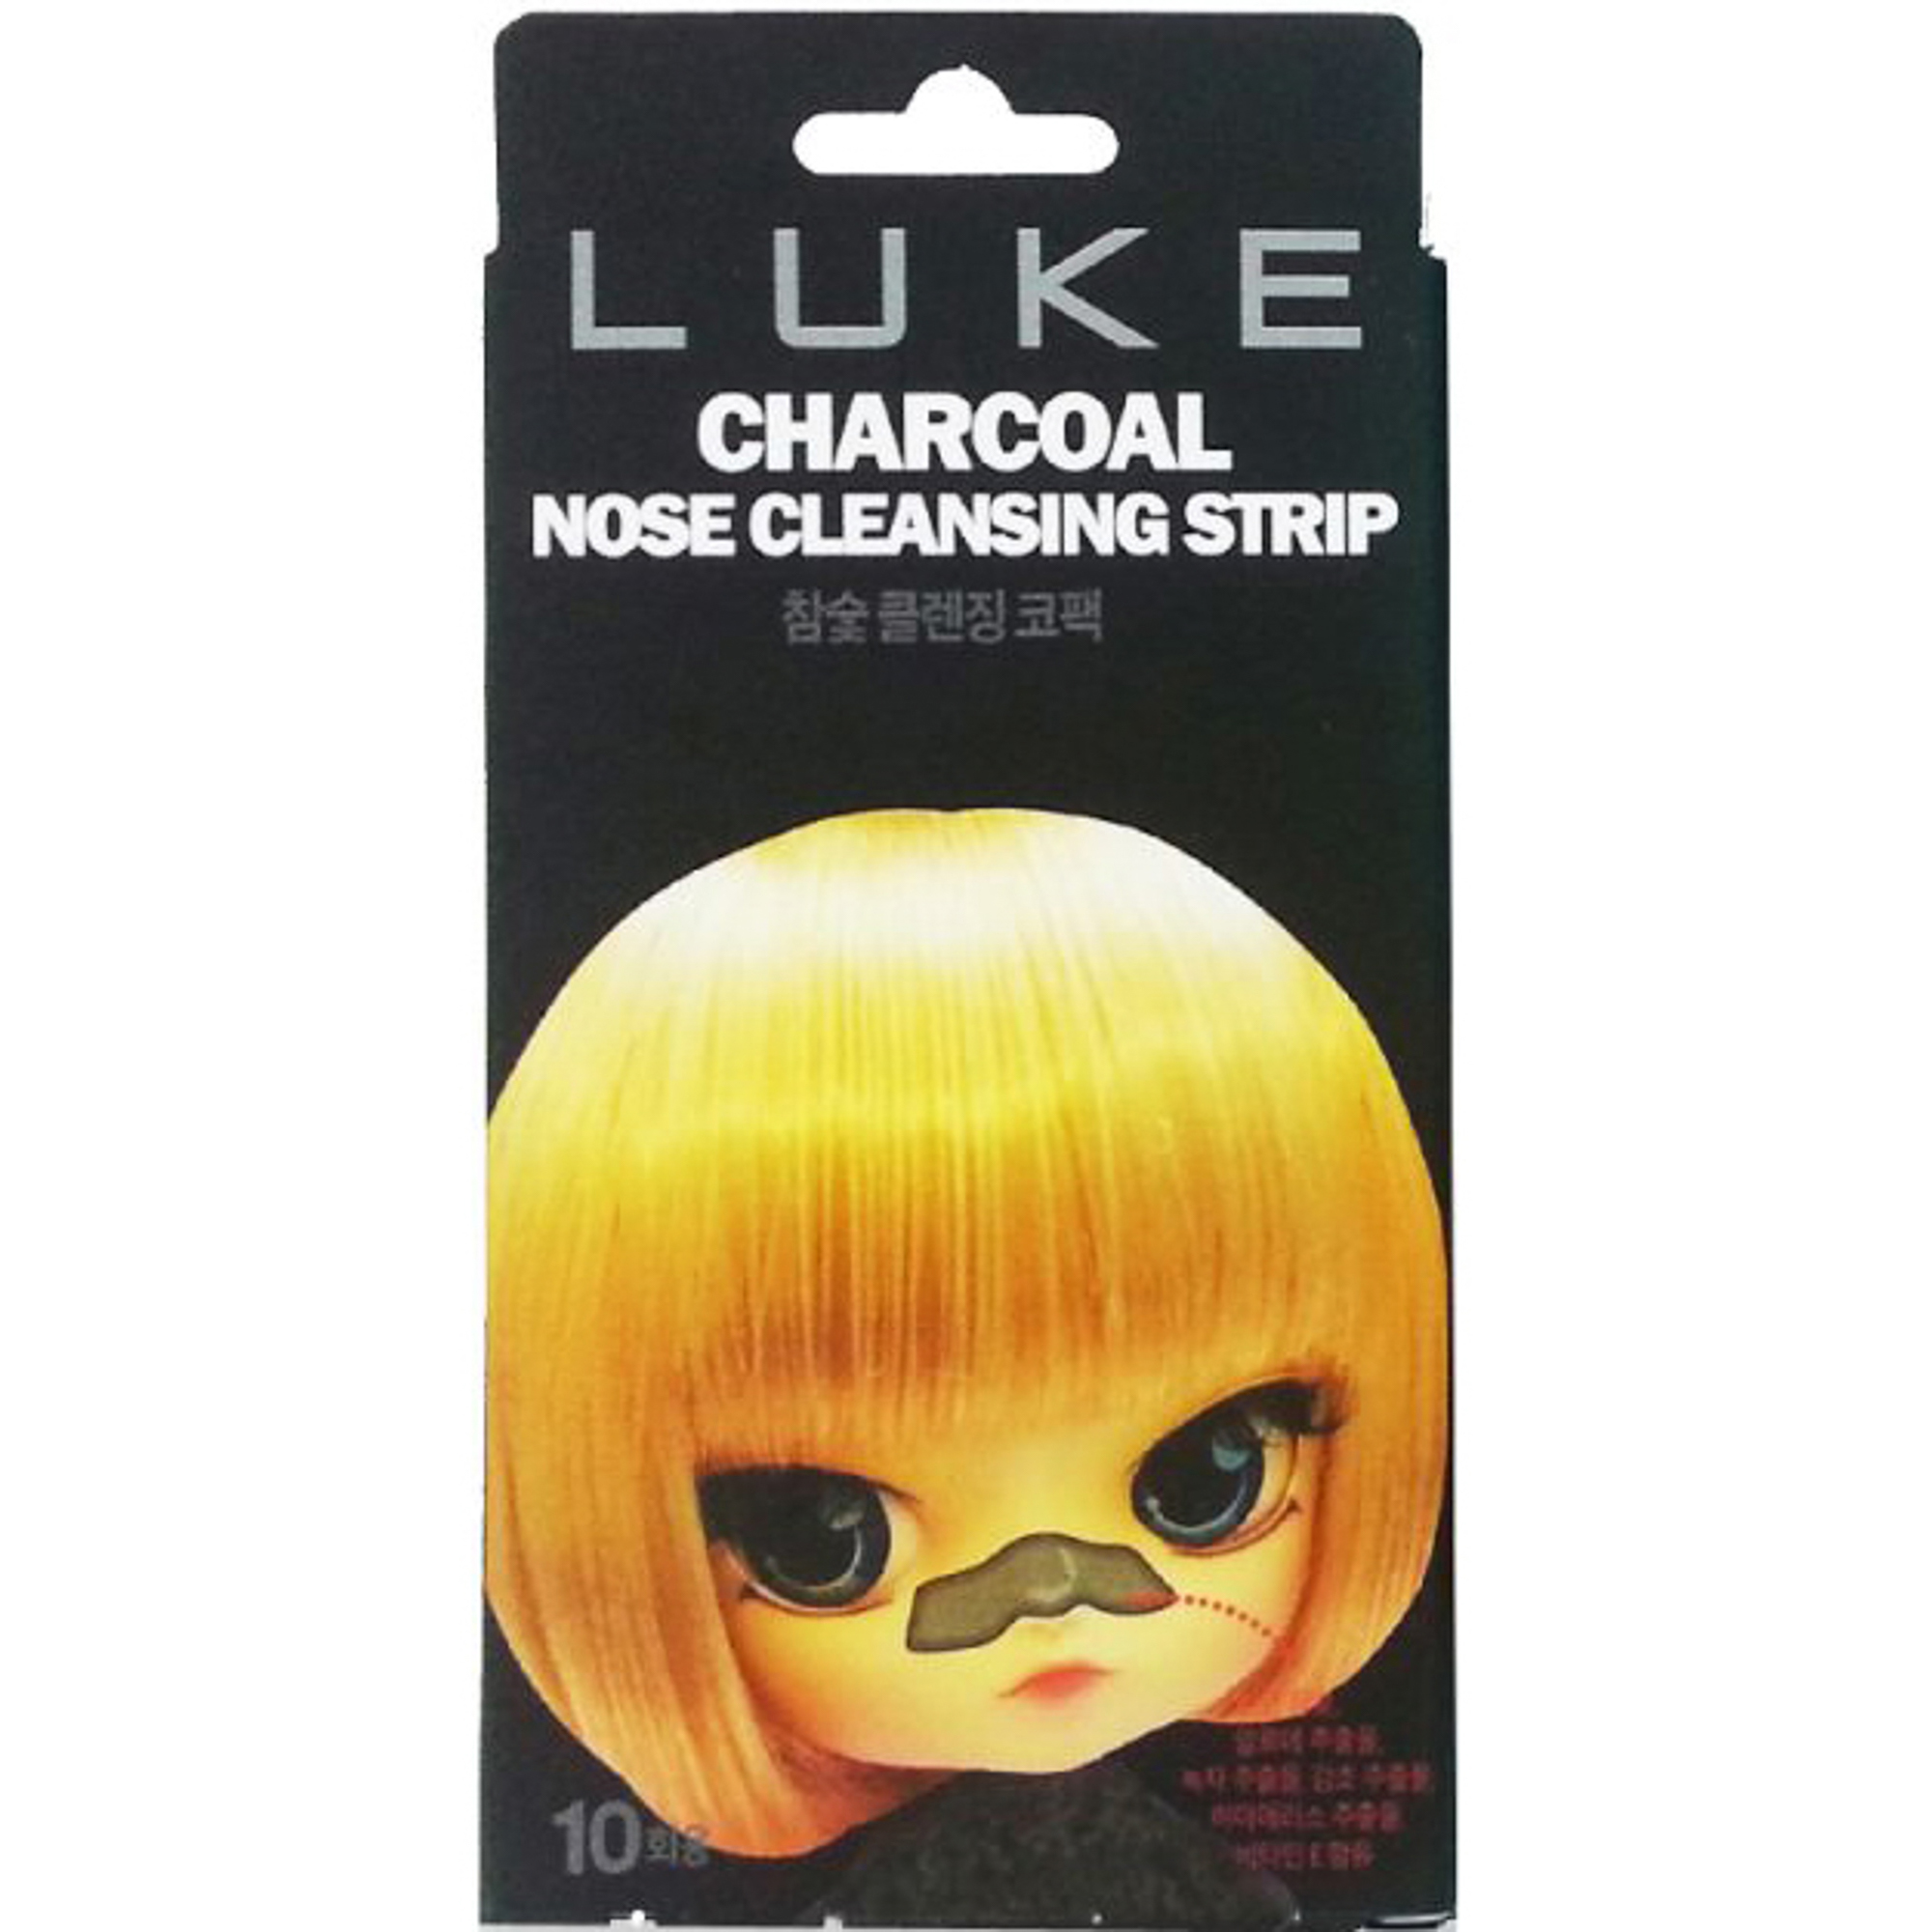 Очищающие полоски Luke Charcoal Nose Cleansing Strip 10 шт пирсинг в крыло носа